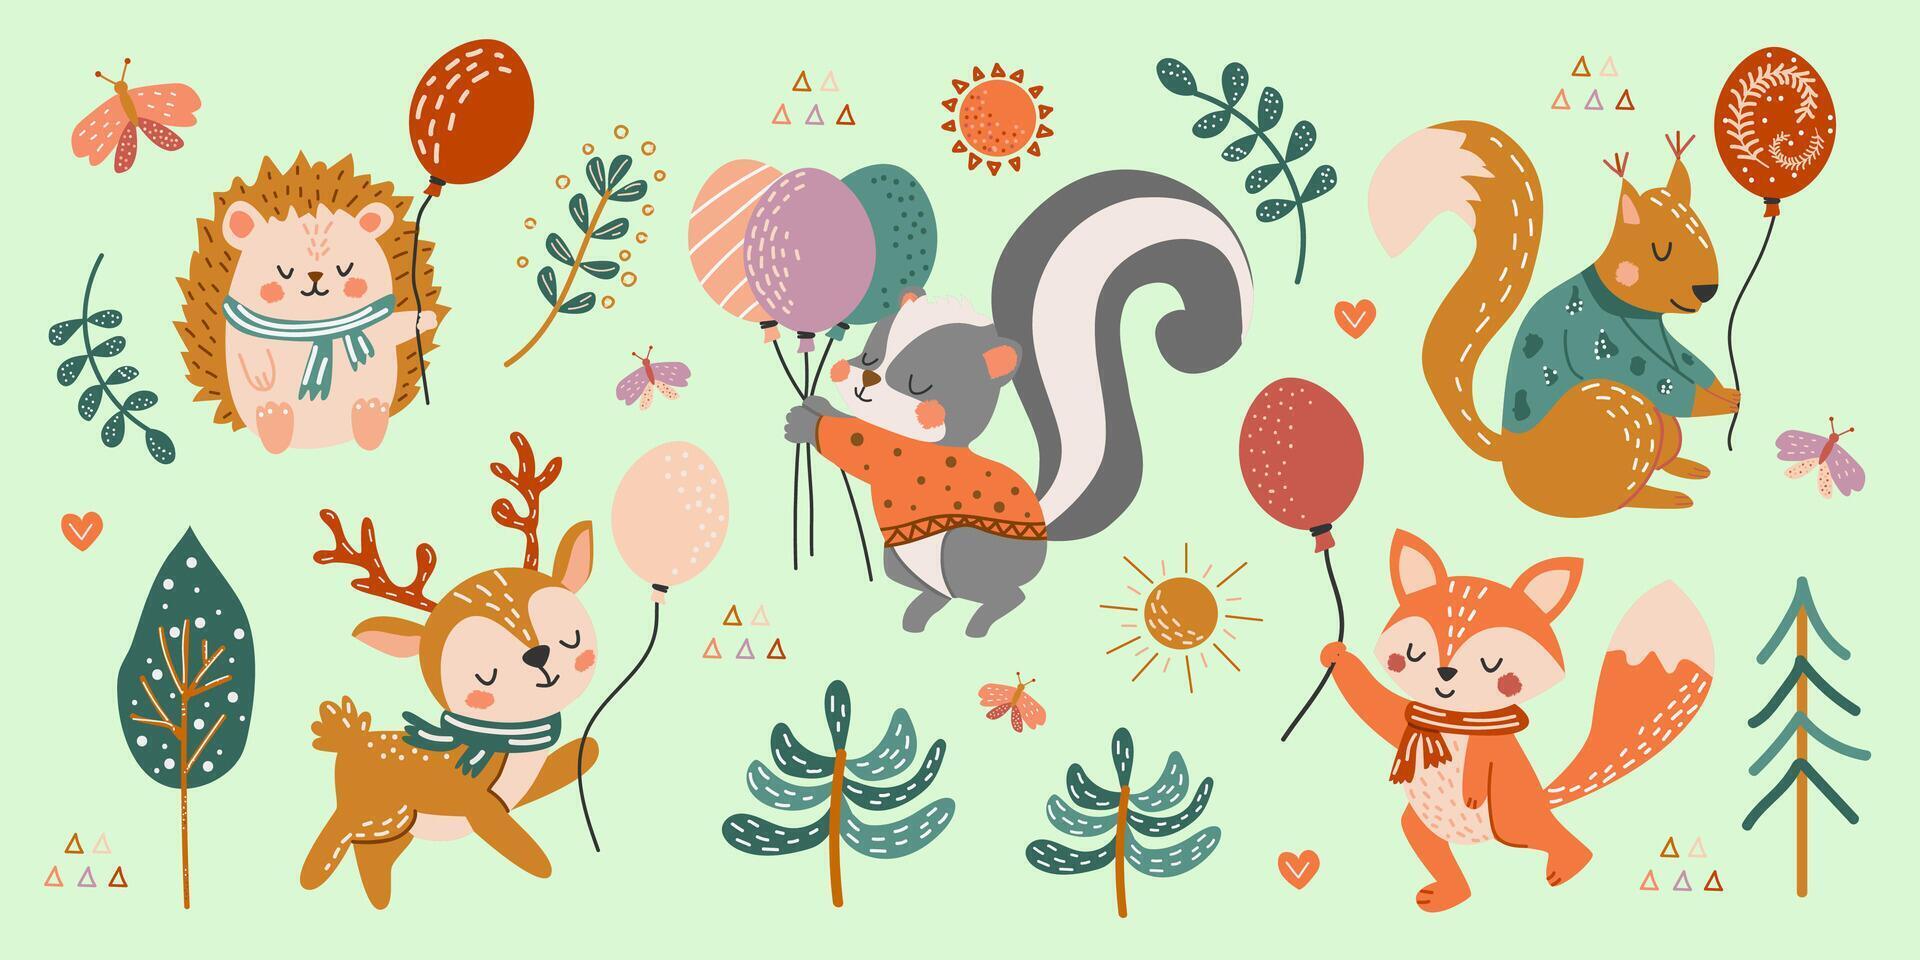 reeks van schattig Woud dieren met ballonnen. vector illustratie in hand- getrokken stijl. hert, eekhoorn, stinkdier, egel, vos in vlak stijl. kinderen creatief illustratie.